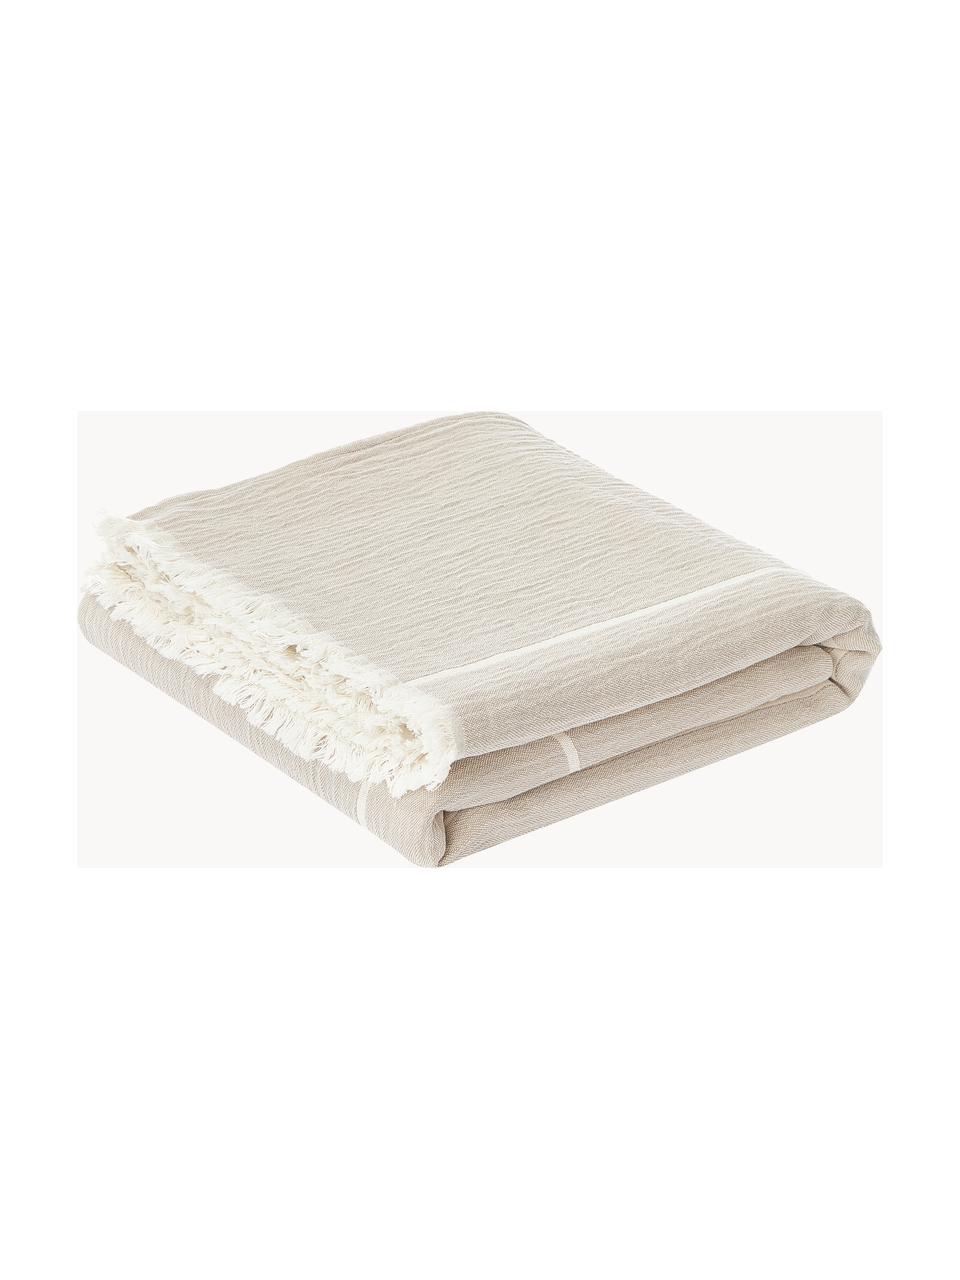 Plaid en coton Architecture, 100 % coton, Beige clair, blanc cassé, larg. 130 x long. 180 cm